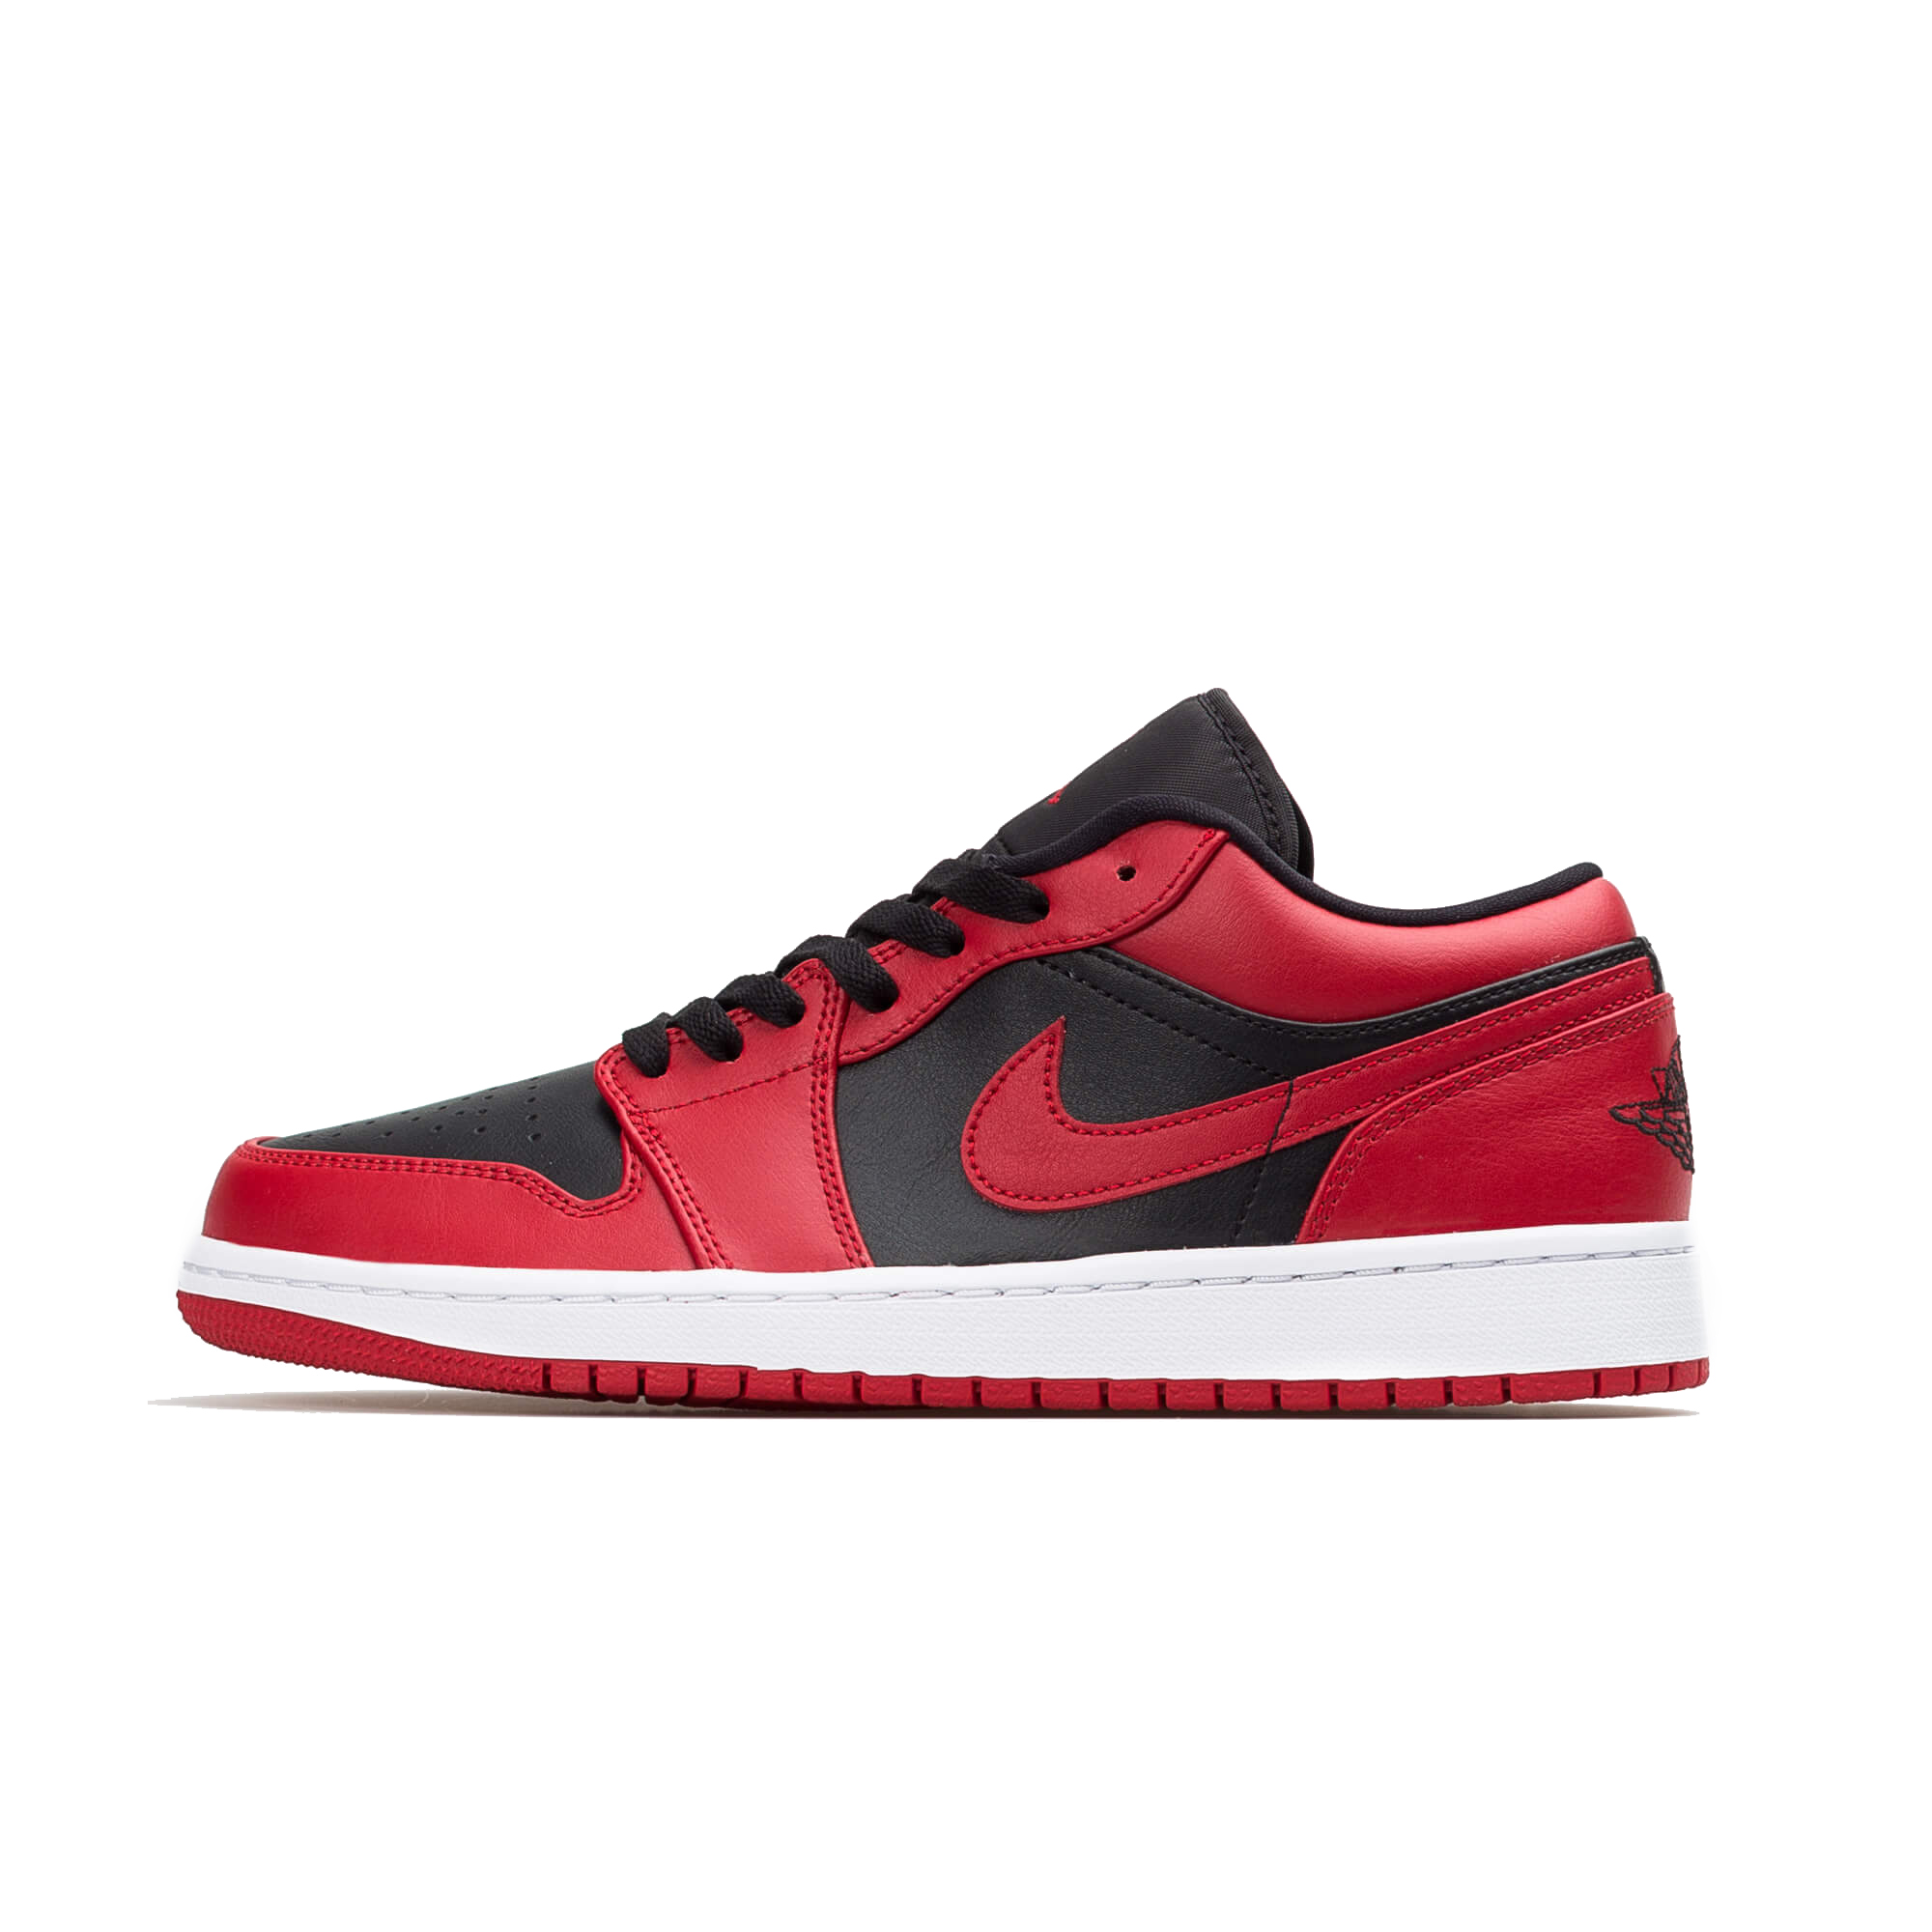 Nike Air Jordan 1 Low “Reverse Bred”